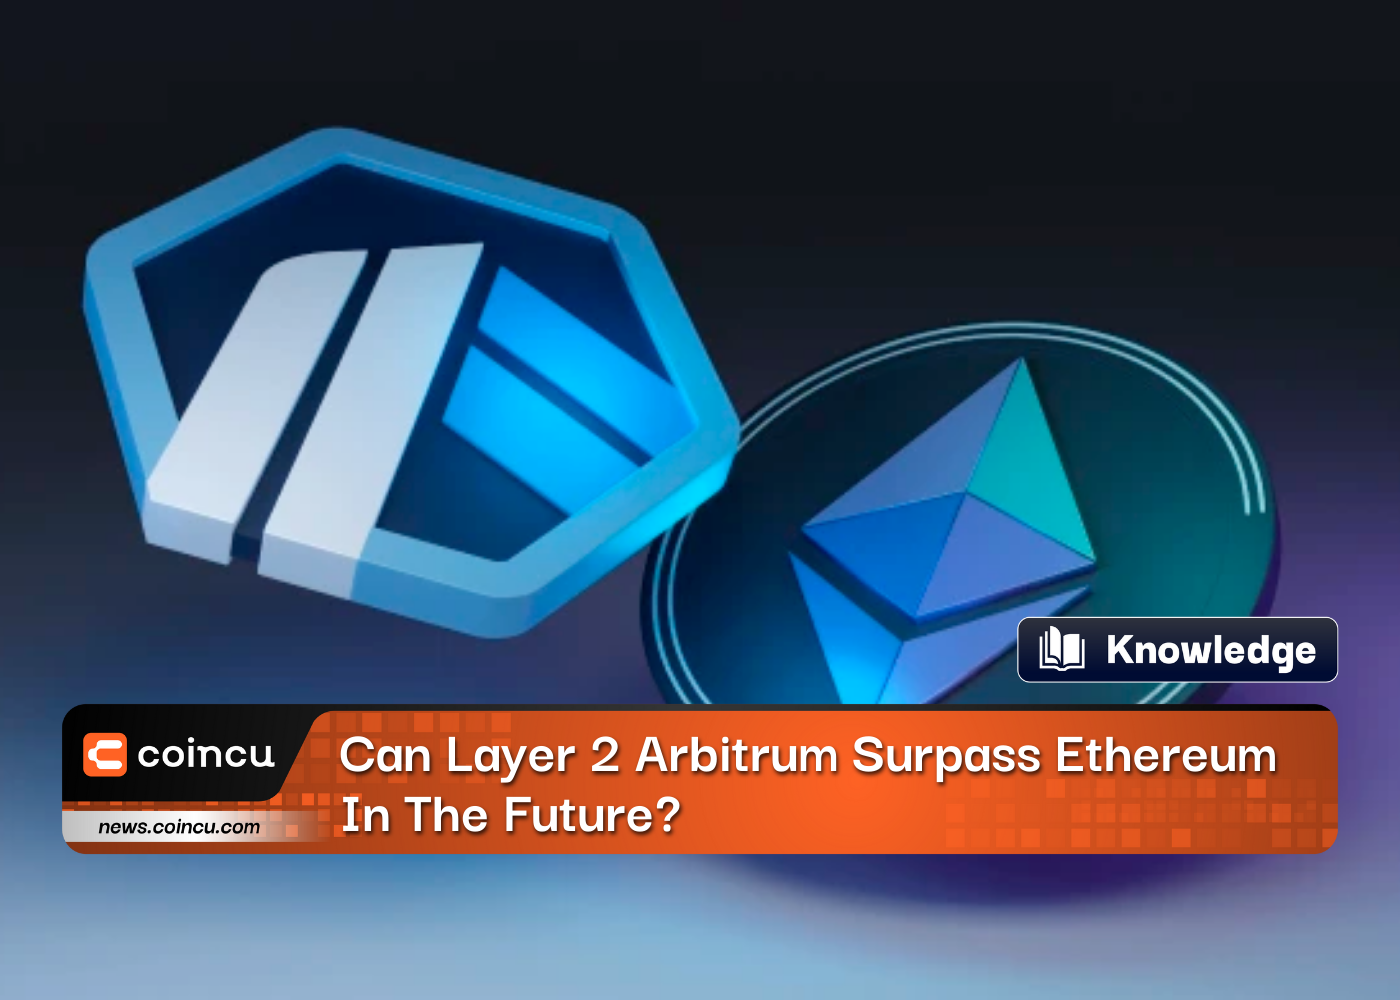 레이어 2 Arbitrum이 미래에 Ethereum을 능가할 수 있습니까?